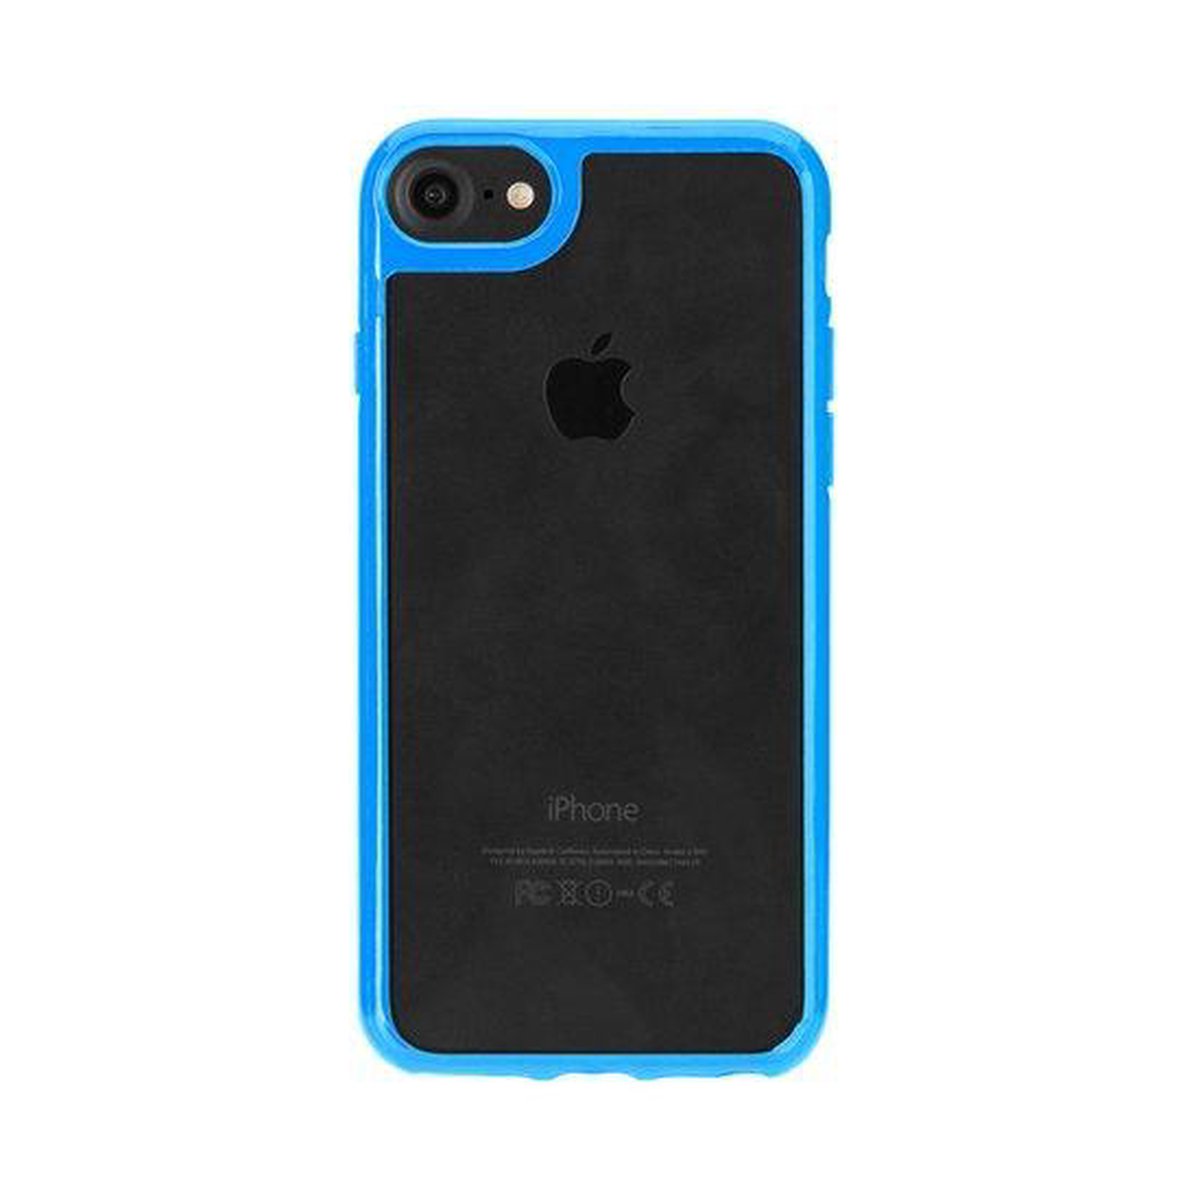 FLAVR Odet bumper hoesje geschikt voor iPhone 6 6s - Blauw Transparant